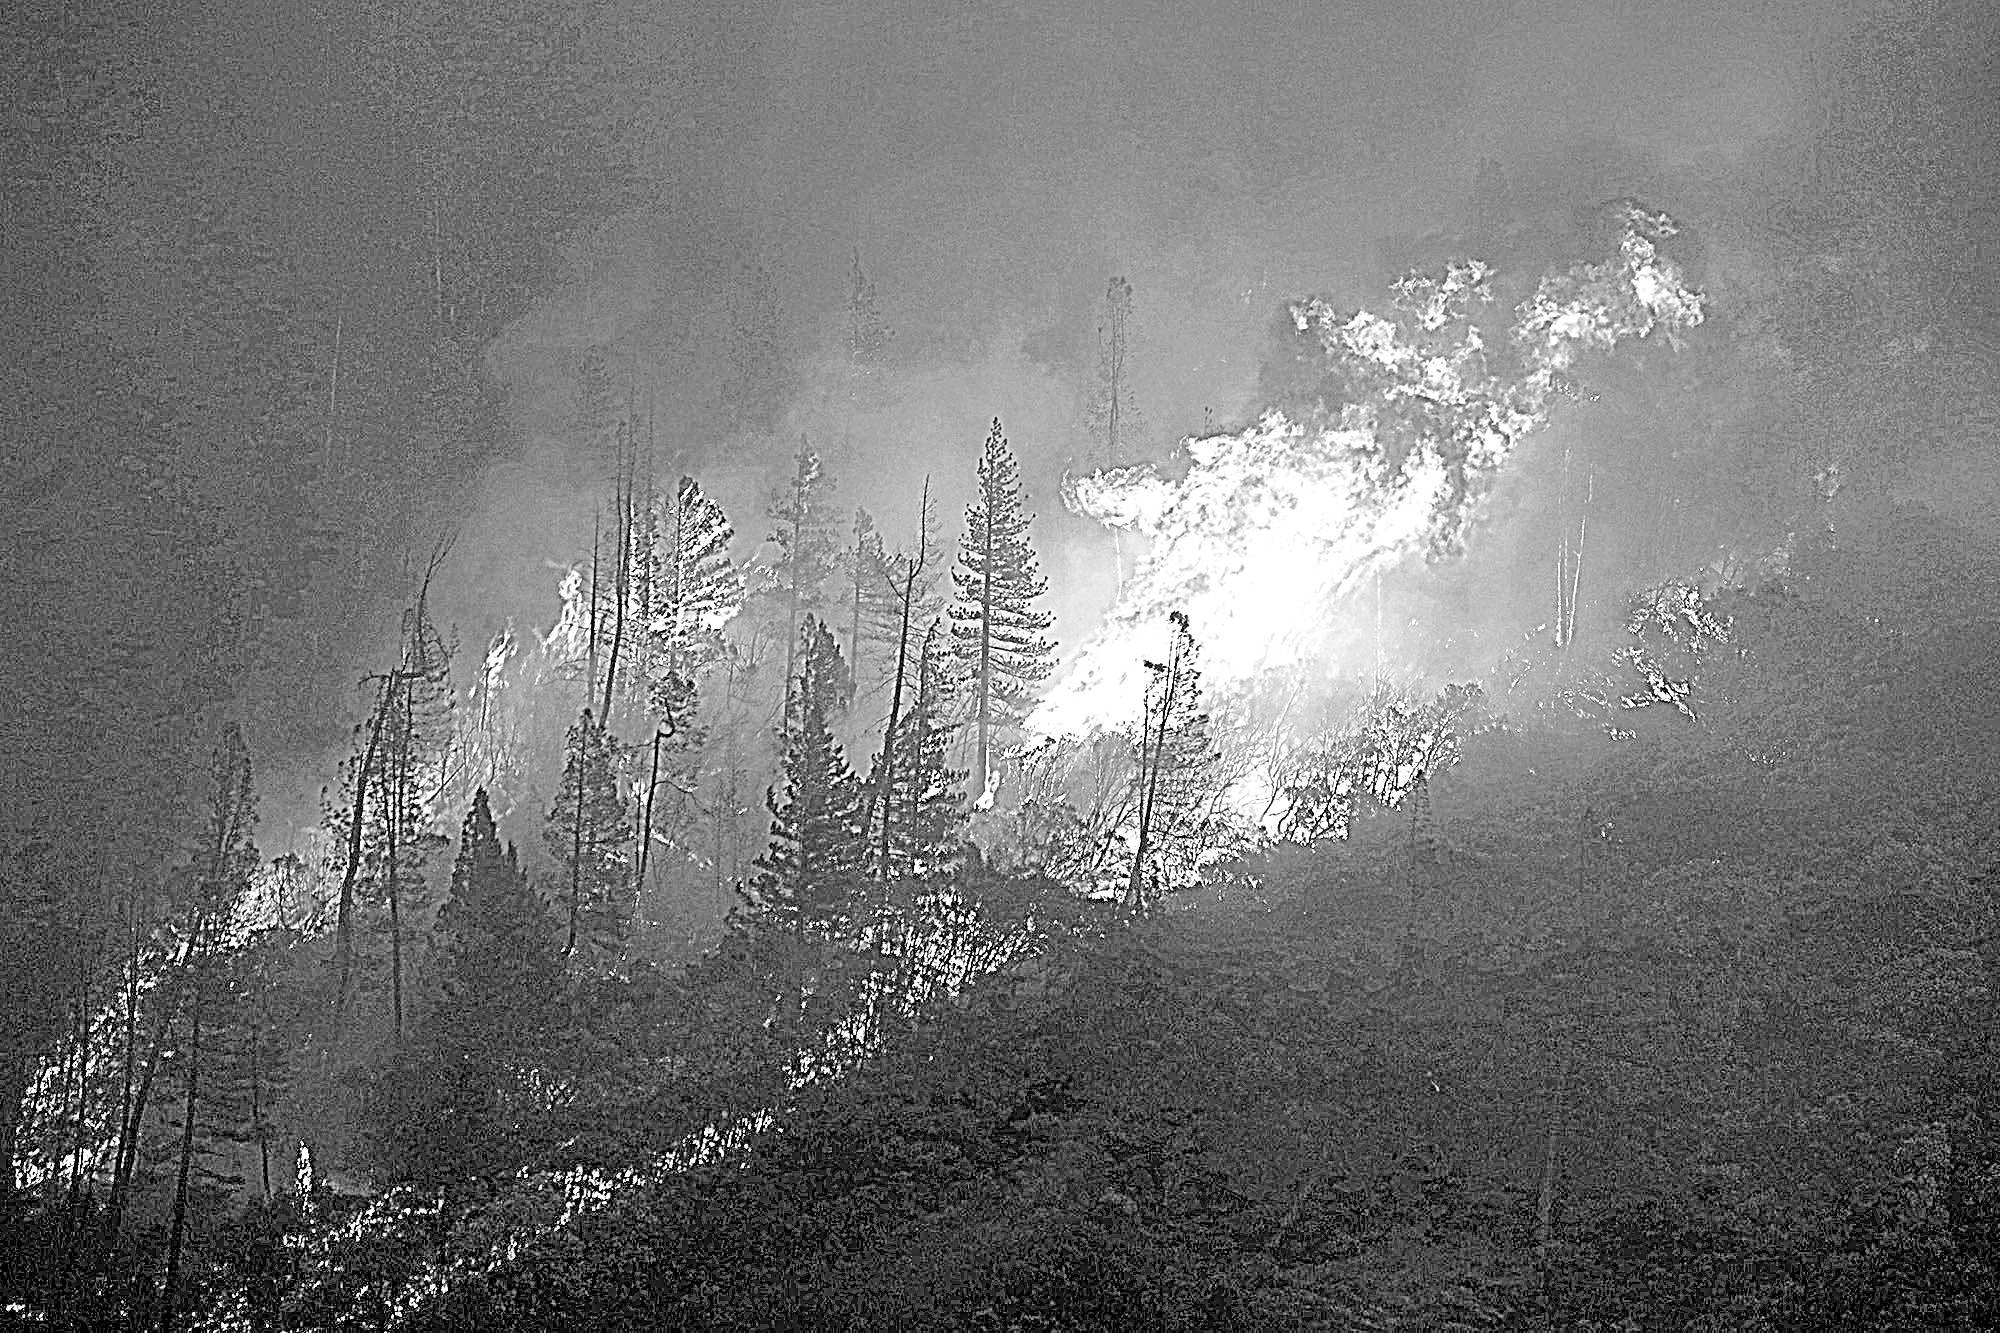 Logging, money battles delay wildfire prevention work